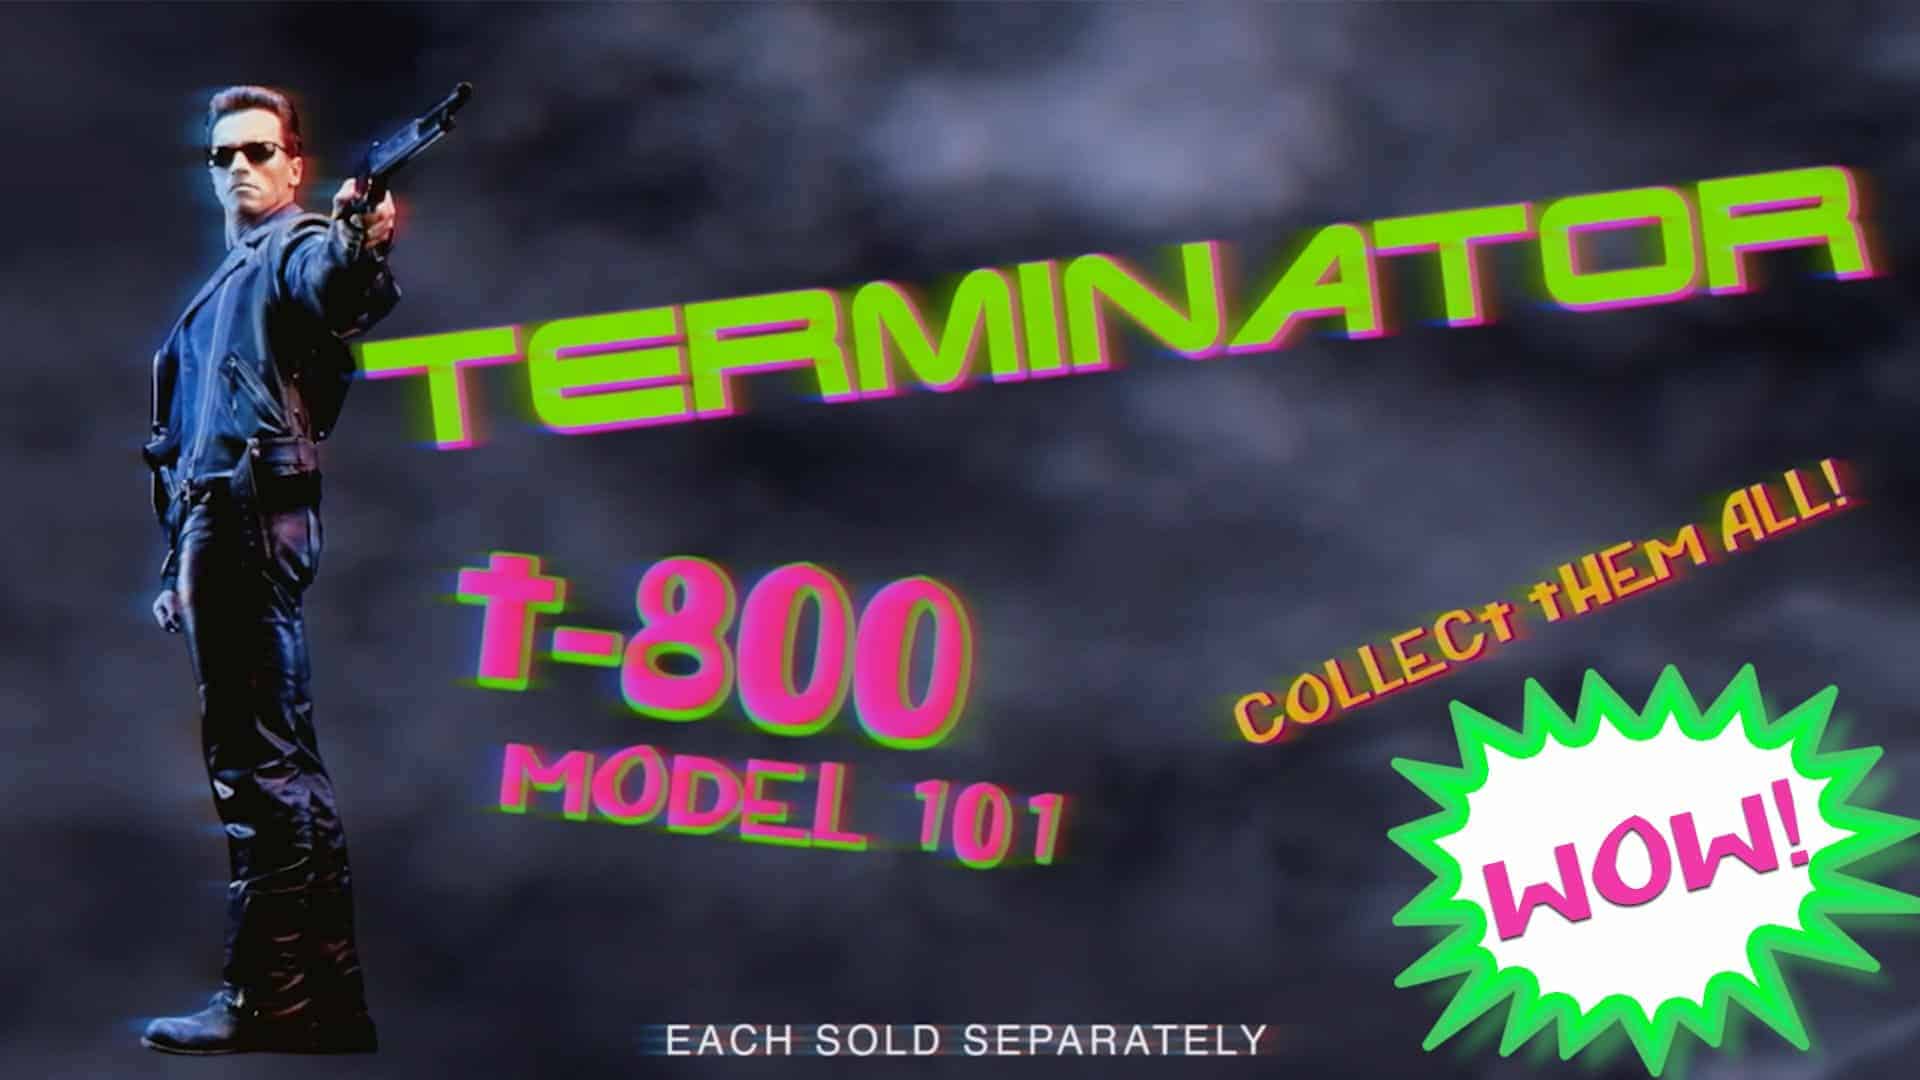 Реклама игрушек: купи себе терминатора!